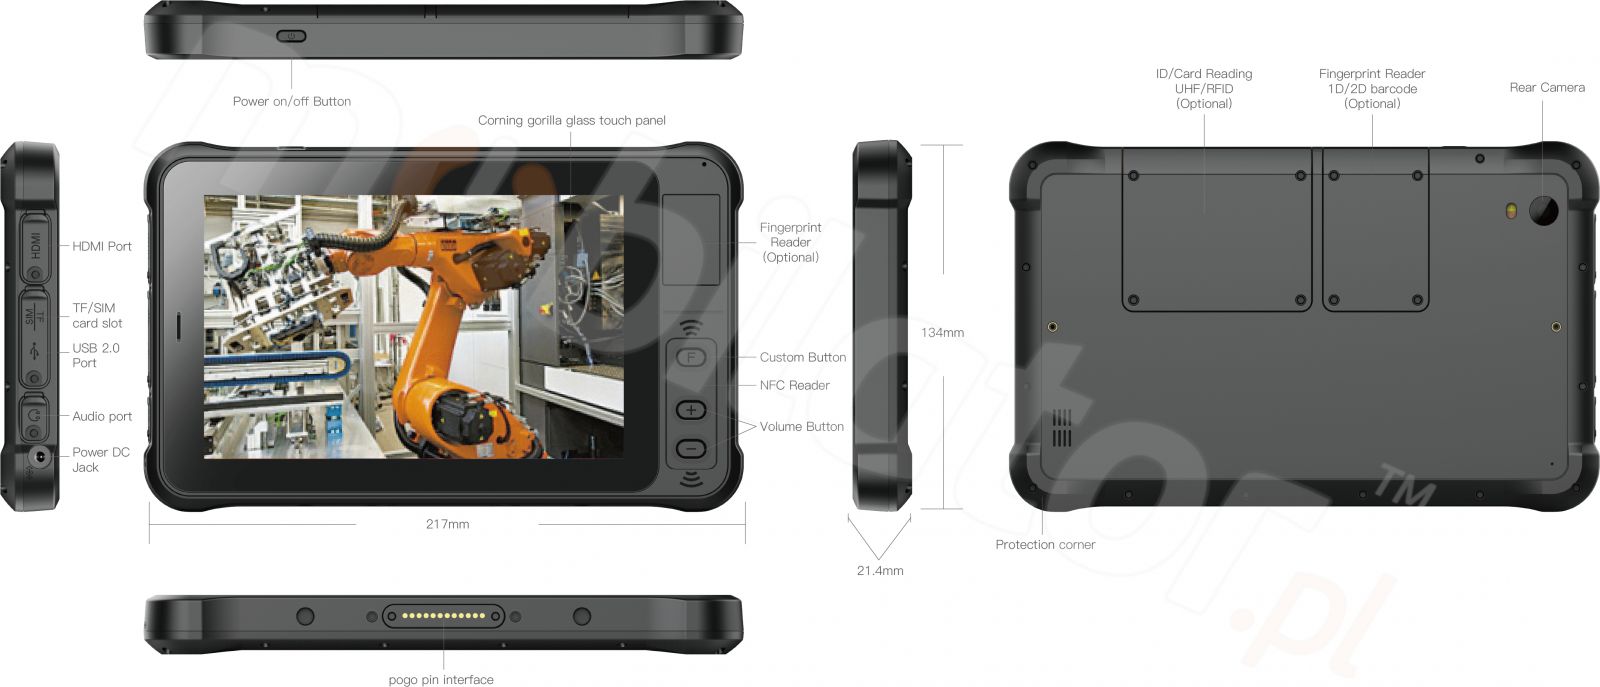 Przemysowy 7 calowy tablet z Androidem 10.0 GMS, 4GB RAM pamici, dyskiem 64GB ROM i NFC- Emdoor Q75 v.1